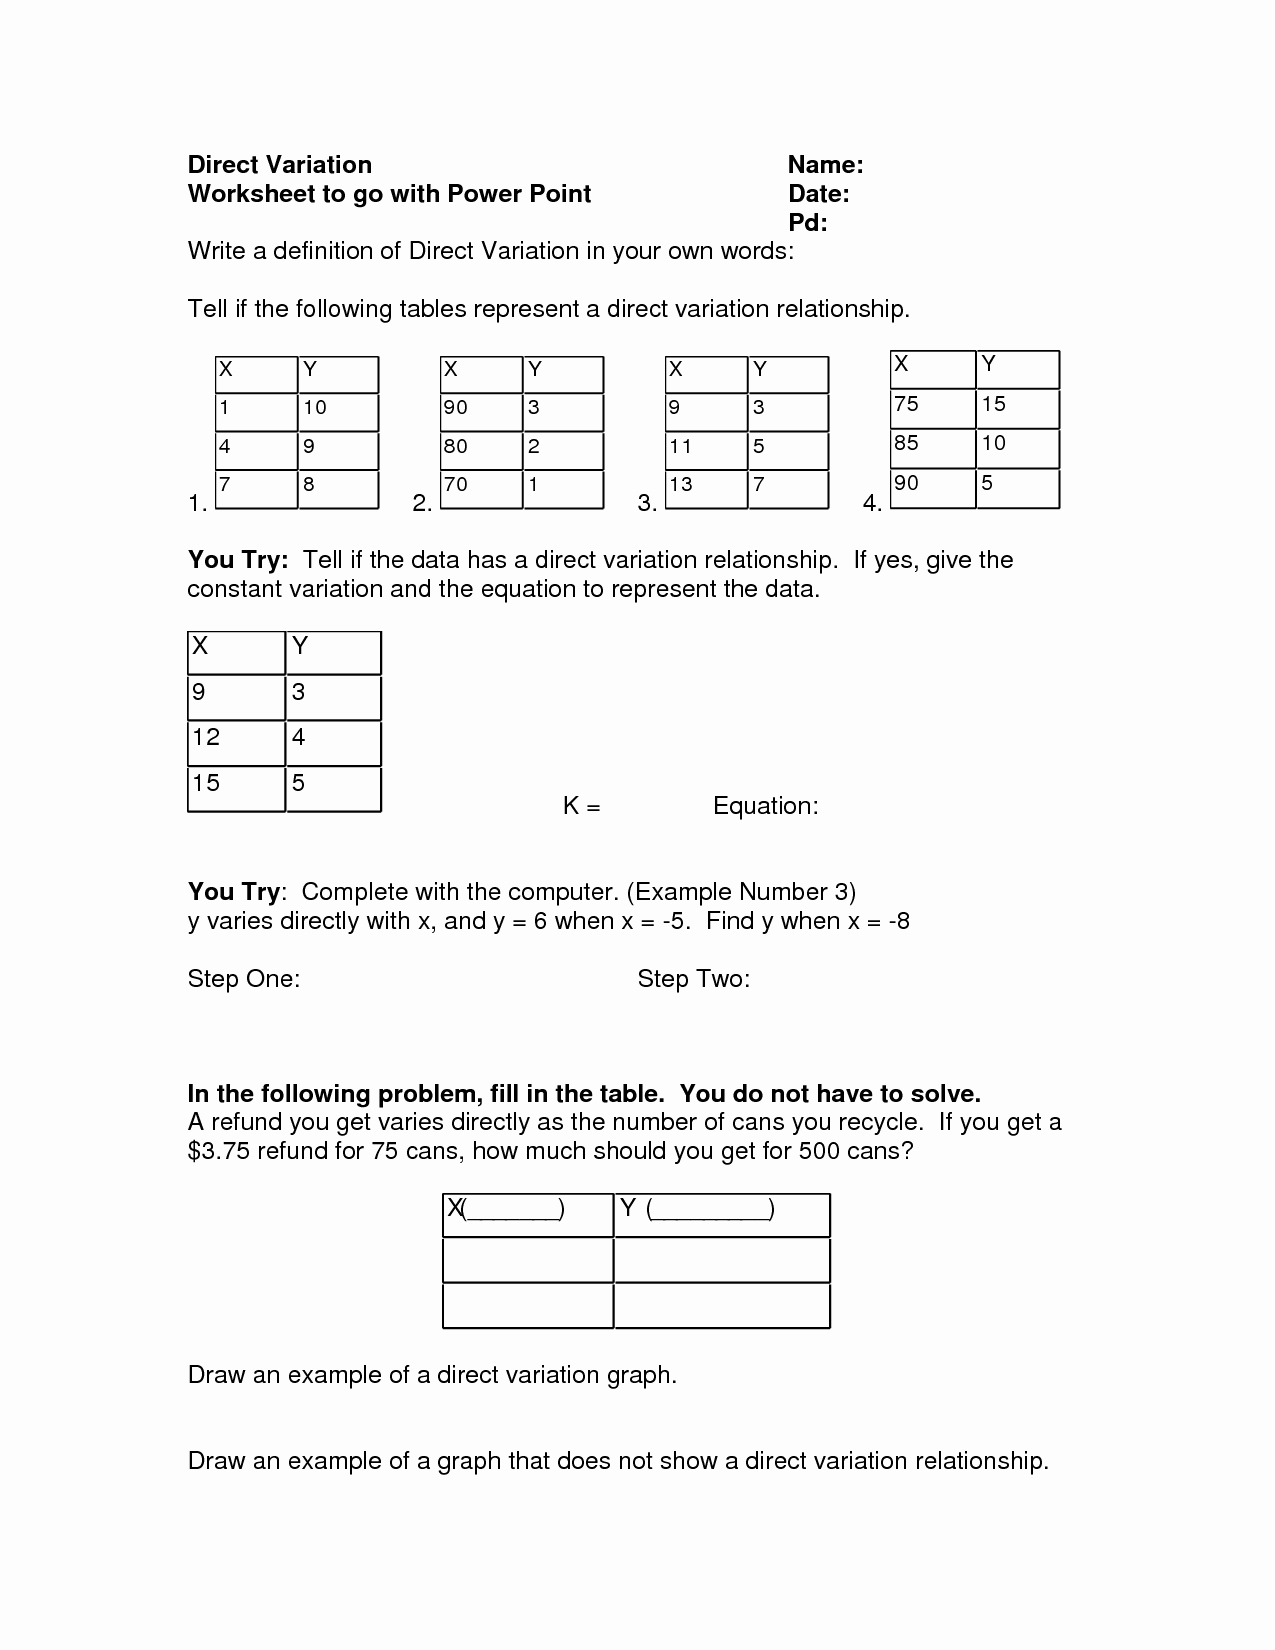 Direct Variation Worksheet Answers Elegant 14 Best Of Direct Variation Worksheets Printable